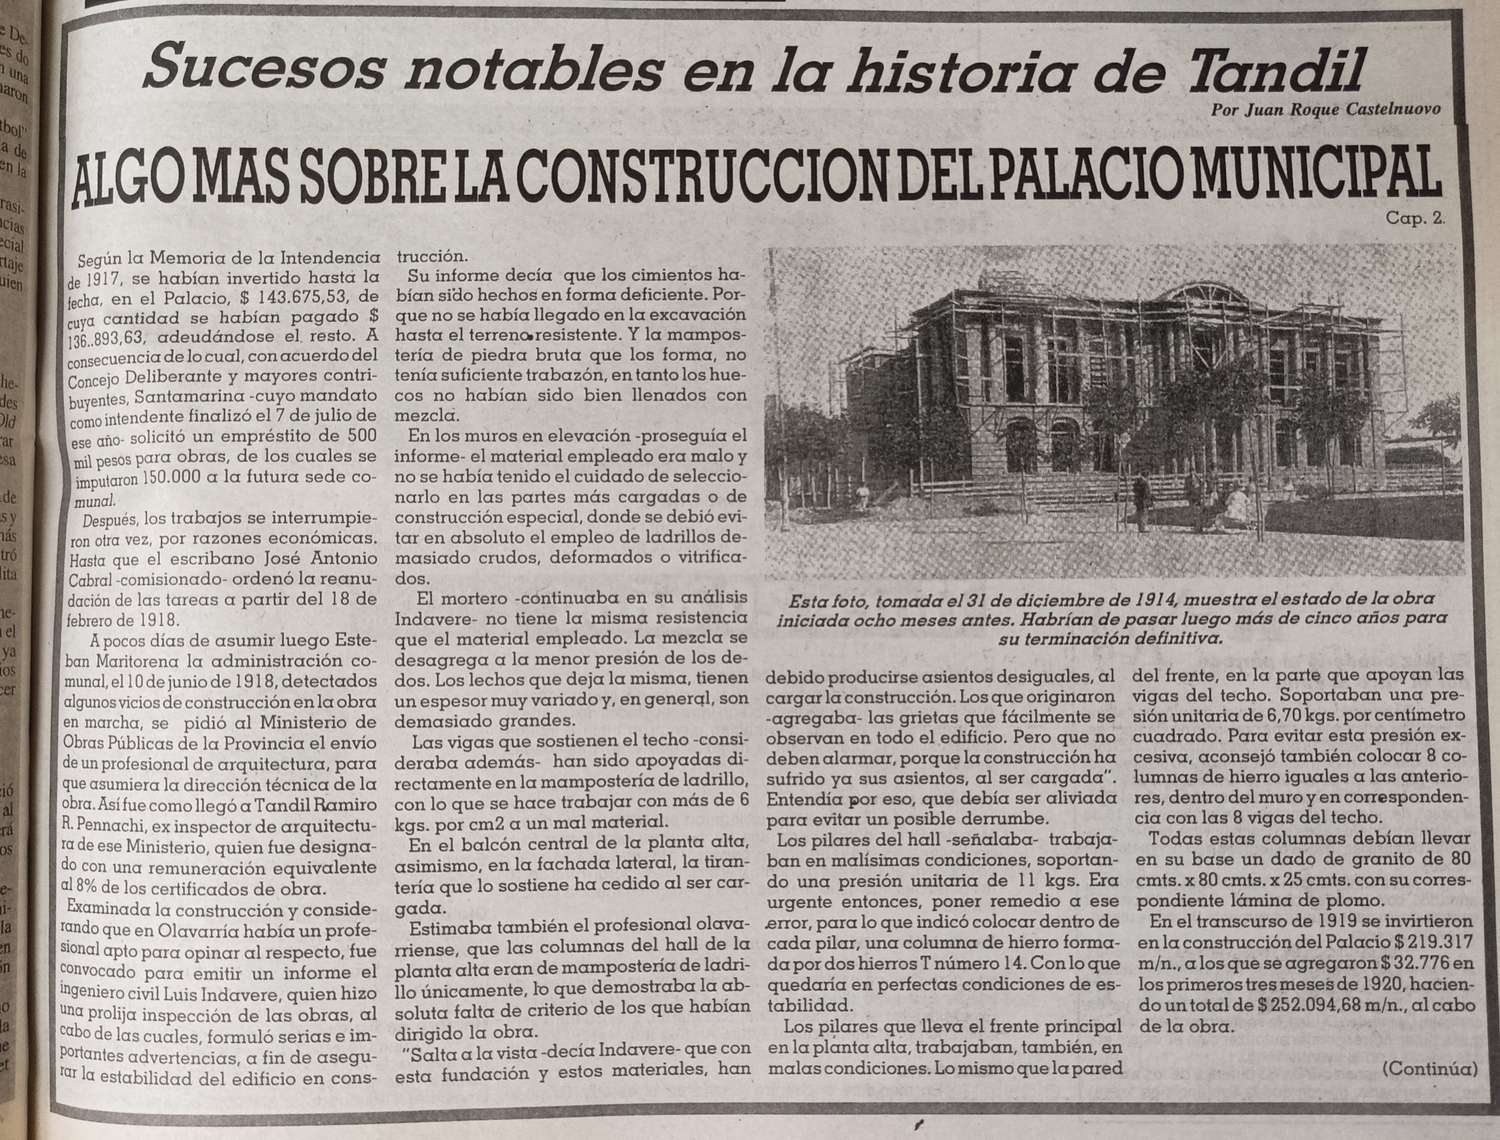 Algo más sobre la construcción del Palacio Municipal - Cap. 2.